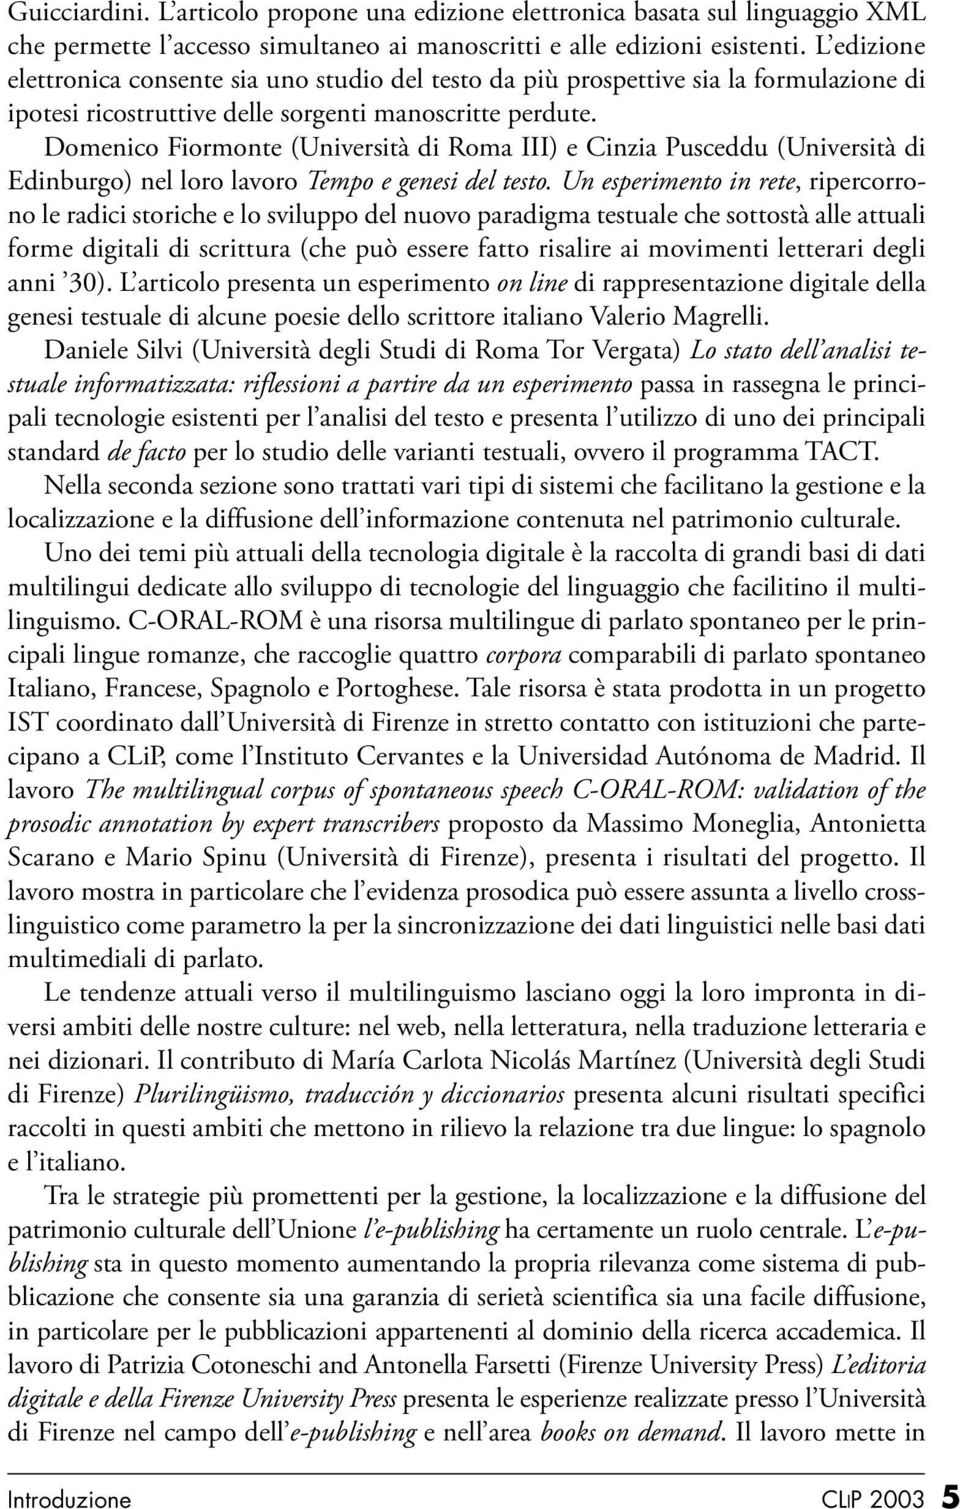 Domenico Fiormonte (Università di Roma III) e Cinzia Pusceddu (Università di Edinburgo) nel loro lavoro Tempo e genesi del testo.